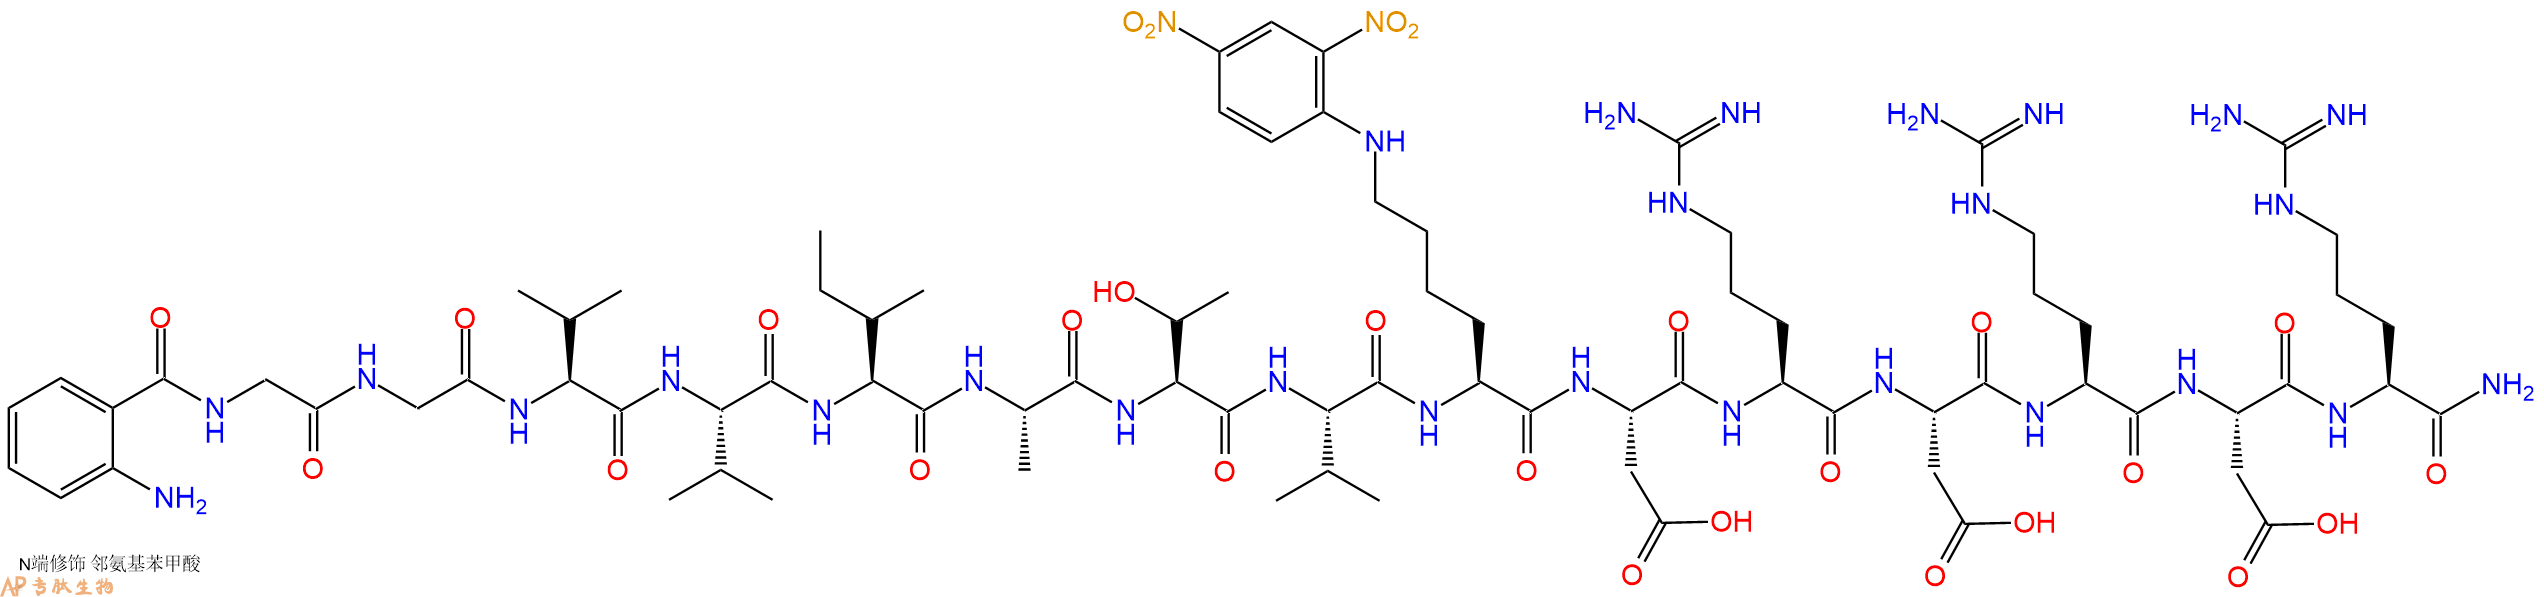 专肽生物产品Abz-Gly-Gly-Val-Val-Ile-Ala-Thr-Val-Lys(Dnp)-Asp-A